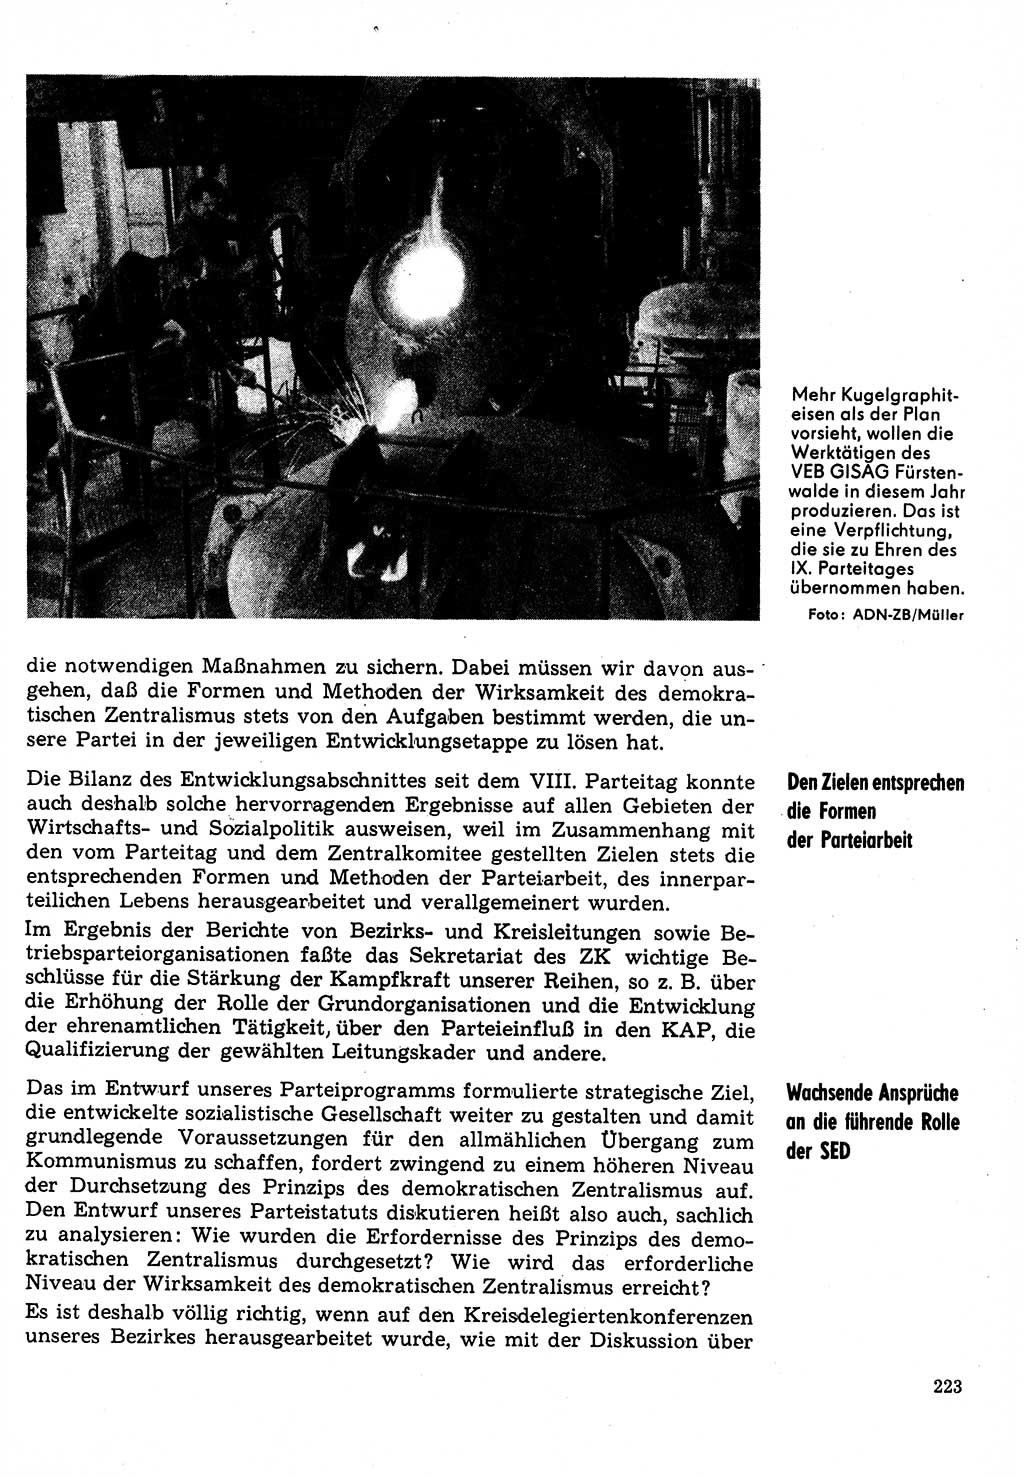 Neuer Weg (NW), Organ des Zentralkomitees (ZK) der SED (Sozialistische Einheitspartei Deutschlands) für Fragen des Parteilebens, 31. Jahrgang [Deutsche Demokratische Republik (DDR)] 1976, Seite 223 (NW ZK SED DDR 1976, S. 223)